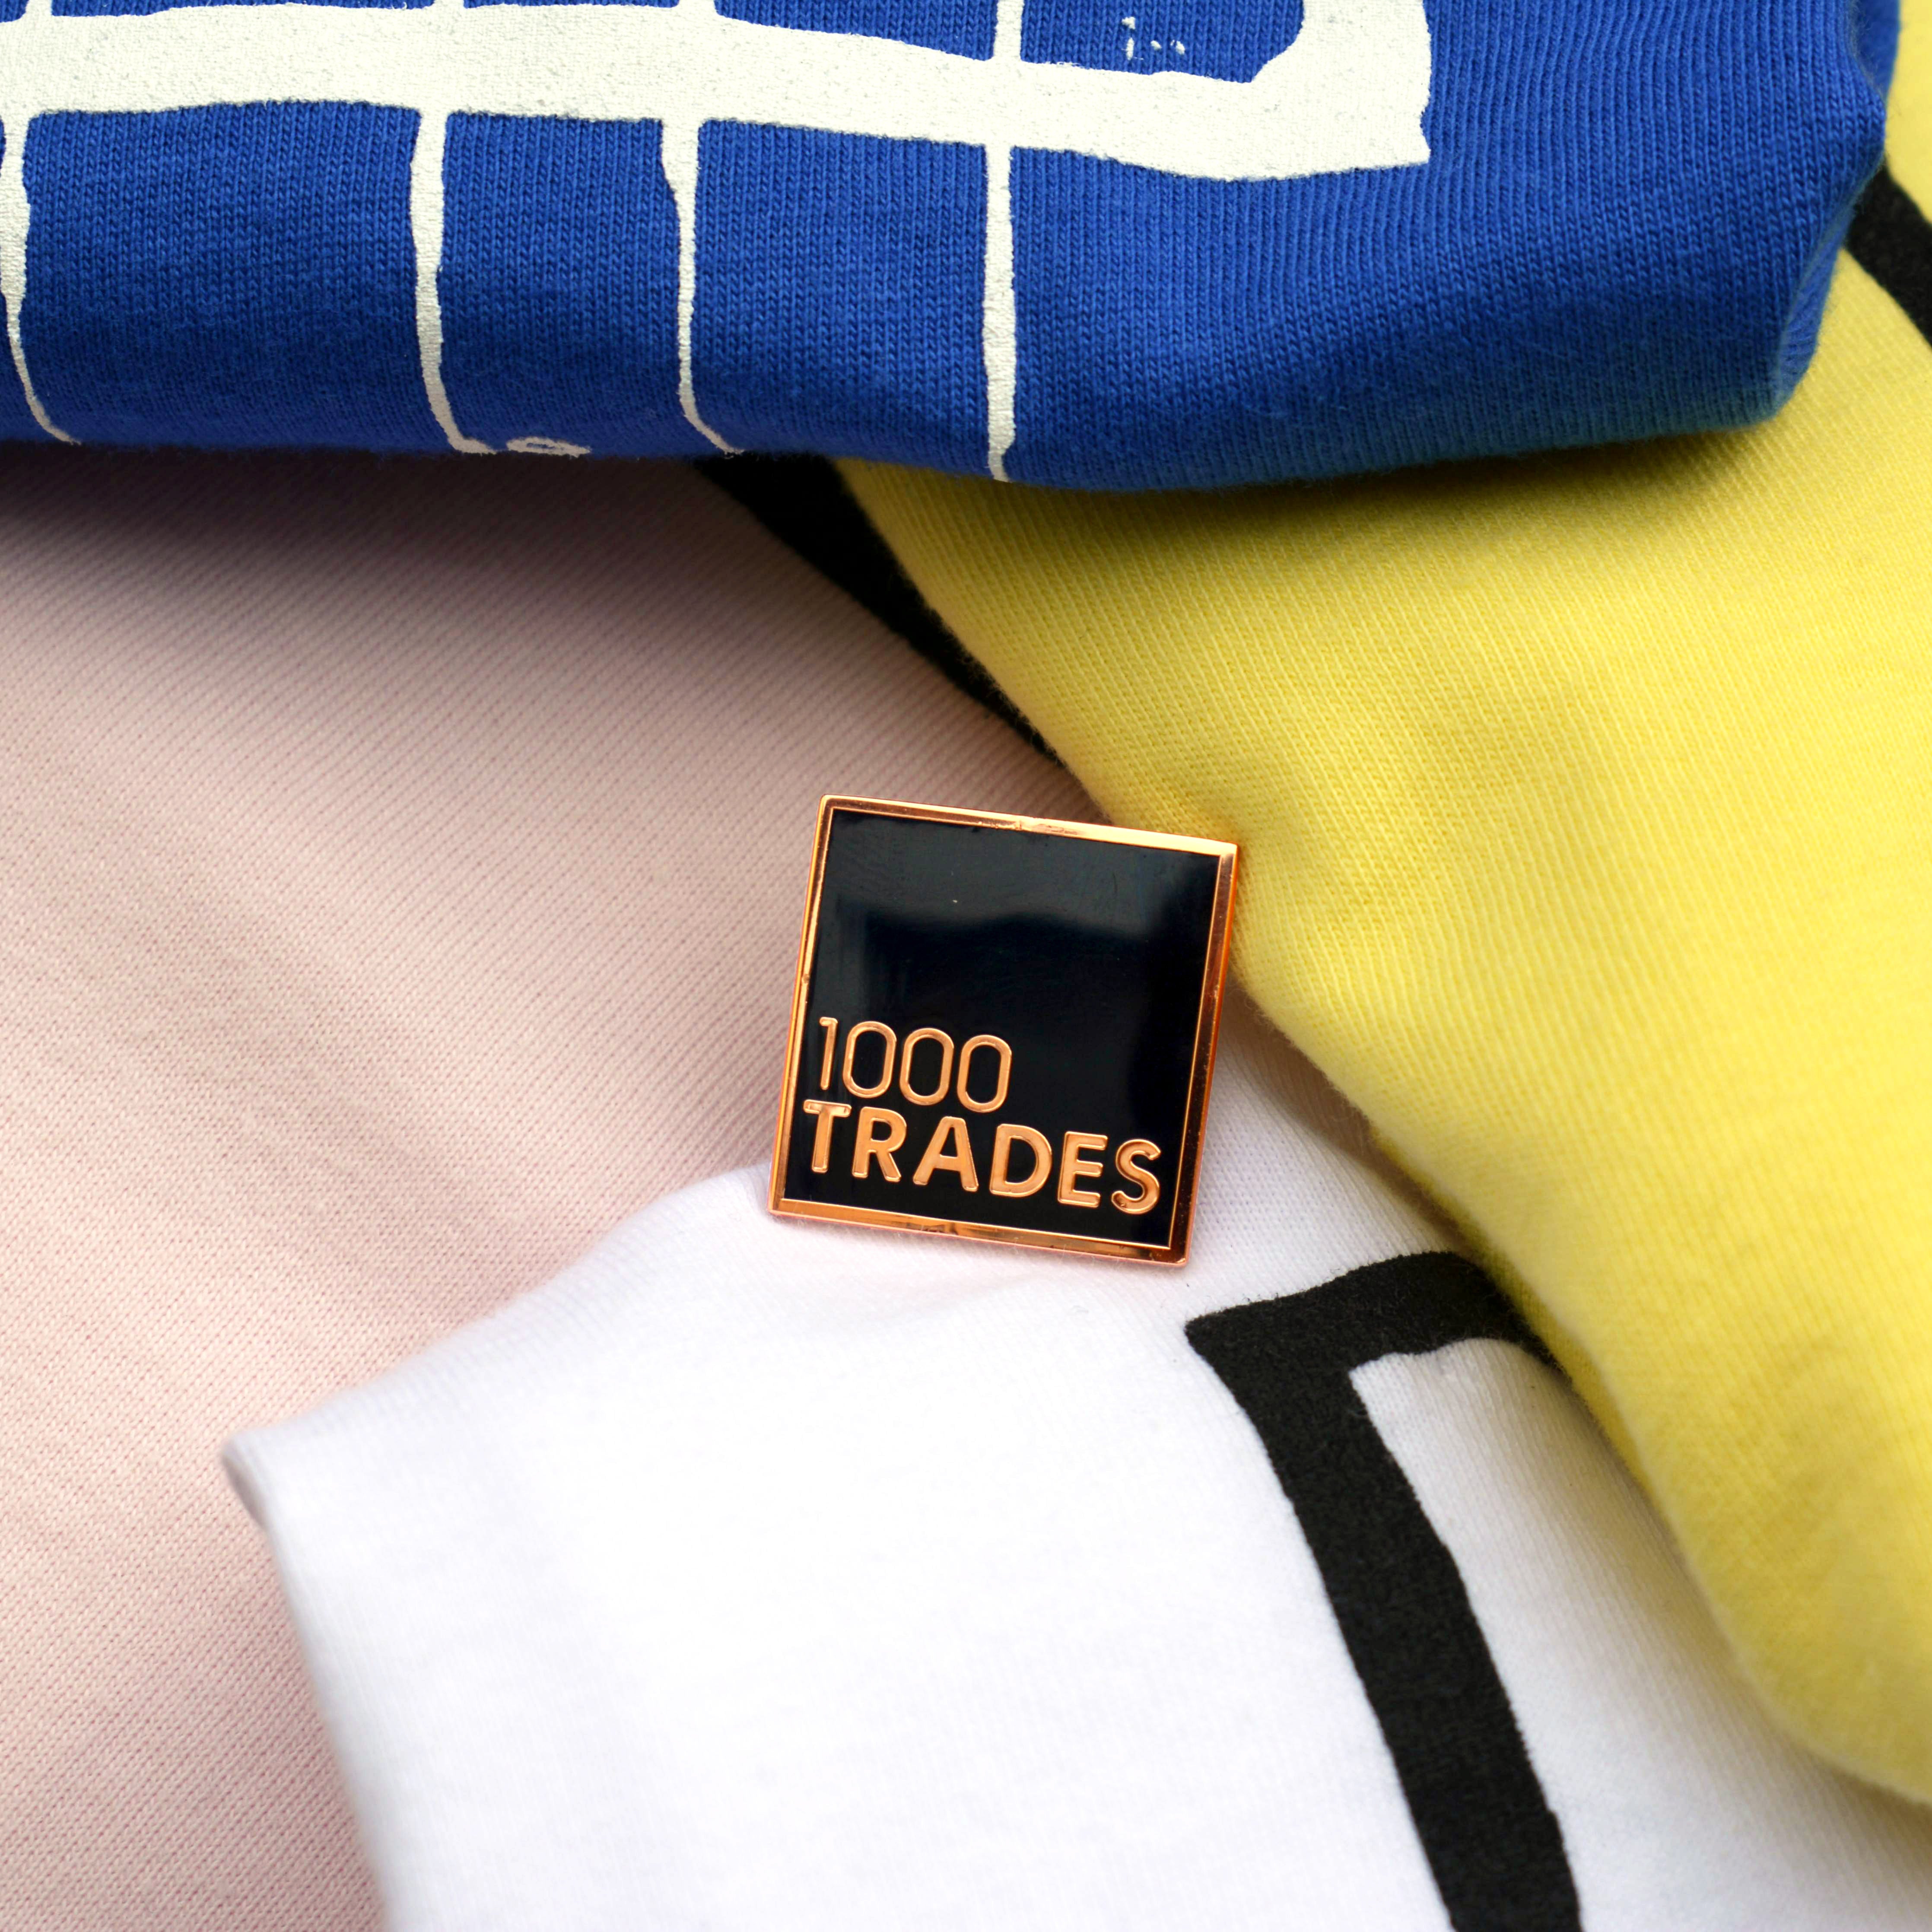 1000 Trades Pin Badge